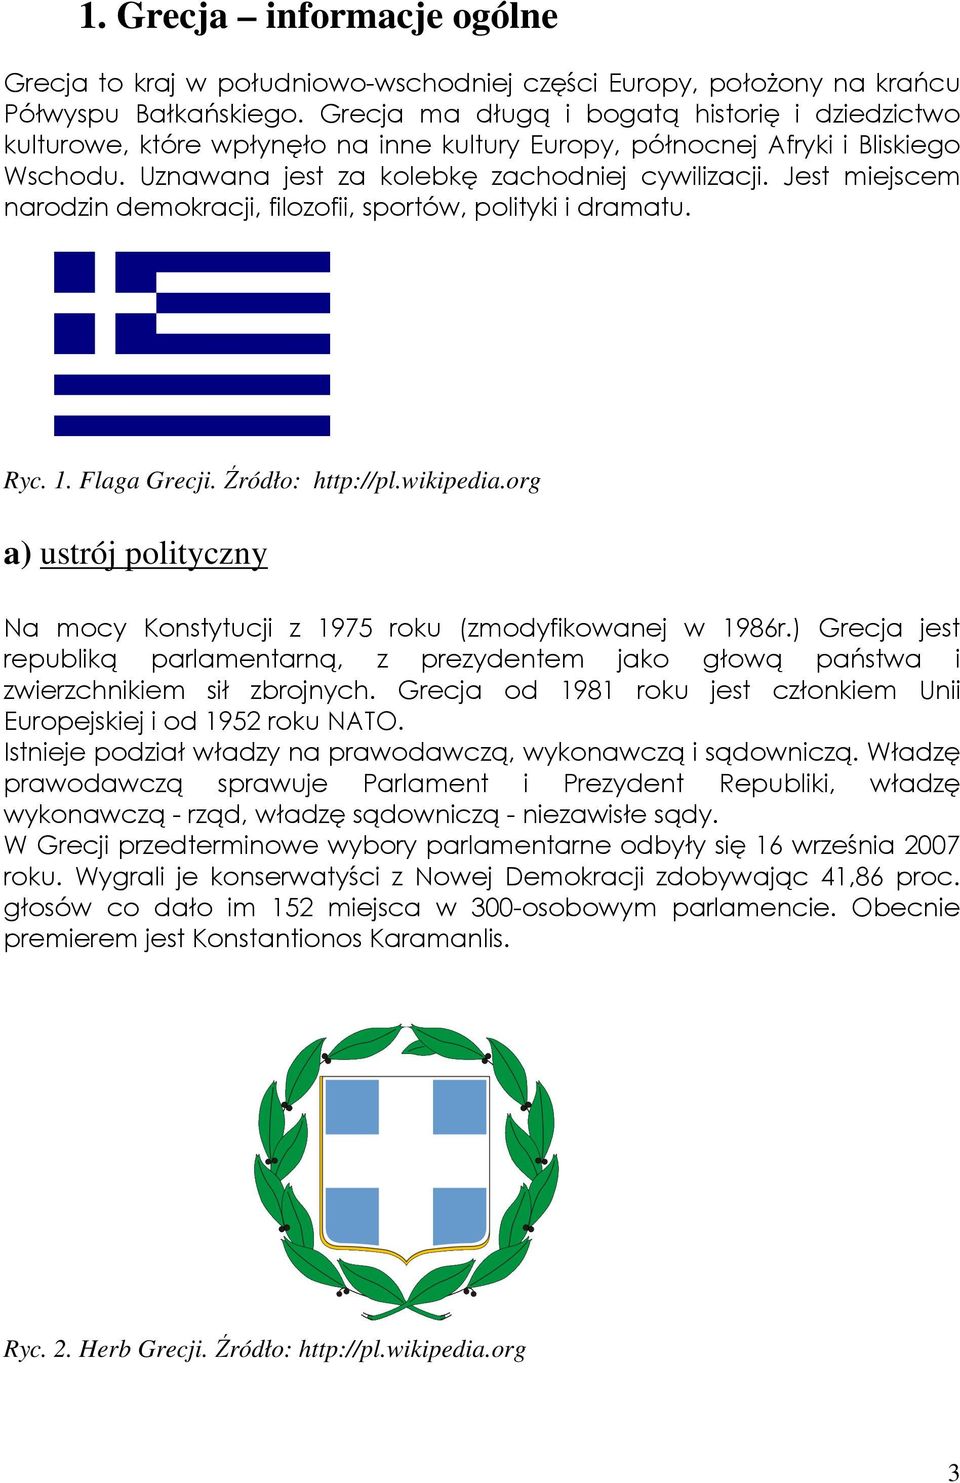 Jest miejscem narodzin demokracji, filozofii, sportów, polityki i dramatu. Ryc. 1. Flaga Grecji. Źródło: http://pl.wikipedia.